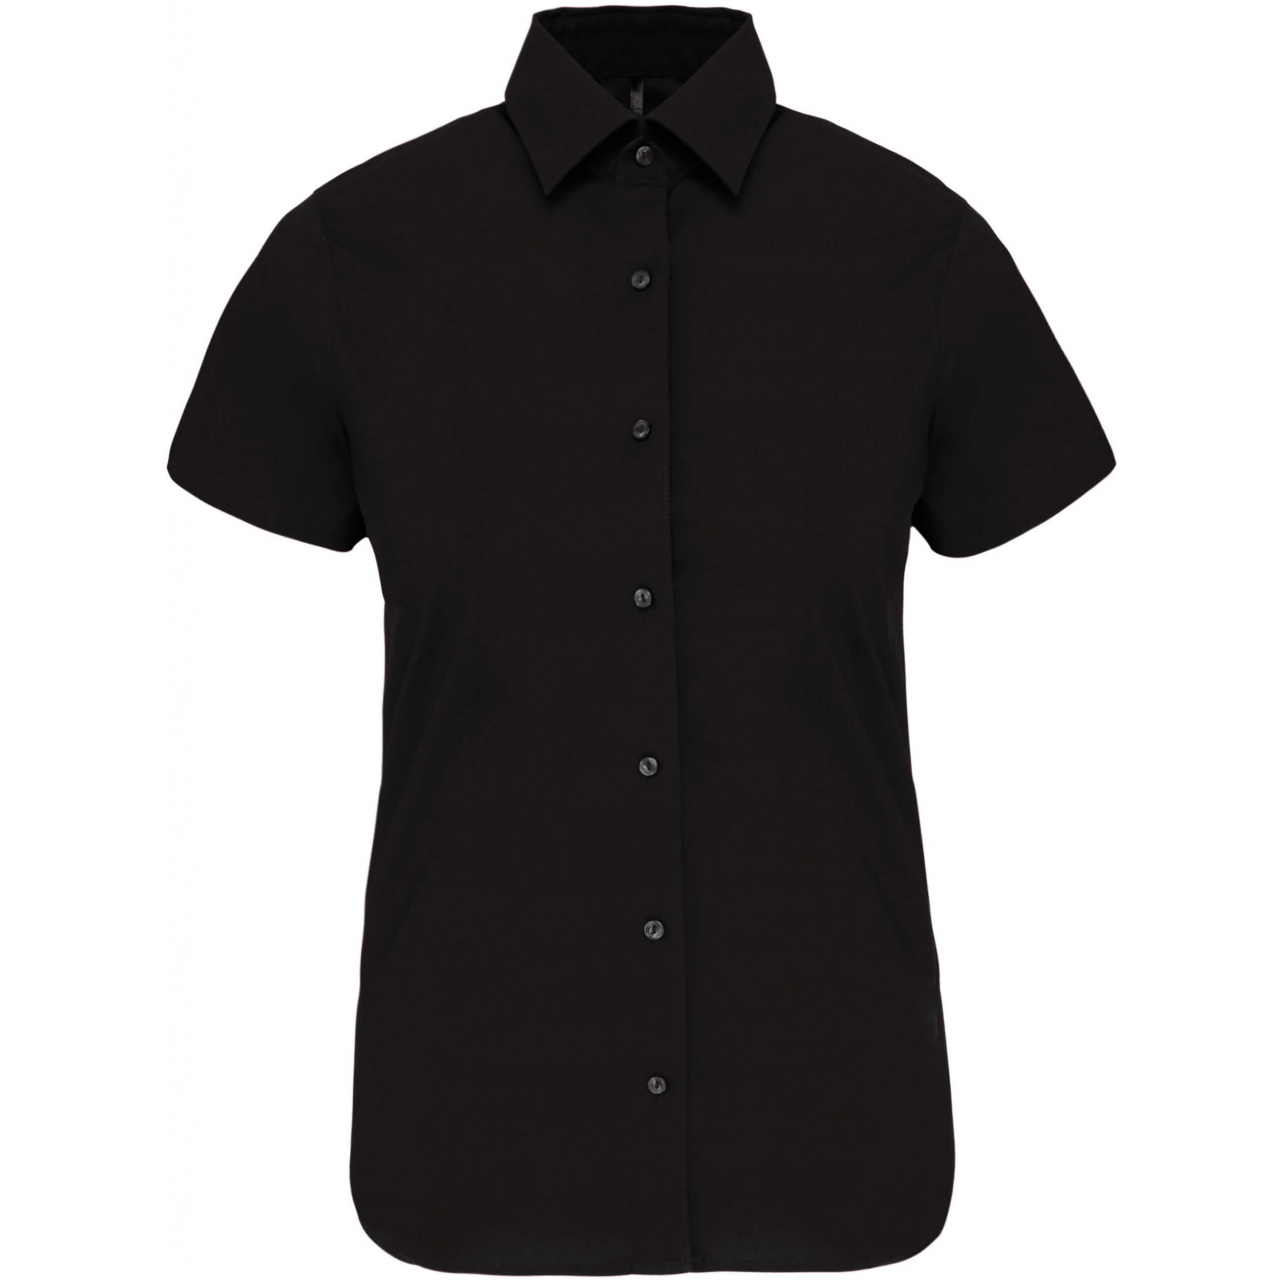 Košile dámská s krátkým rukávem Kariban strečová - černá, XS